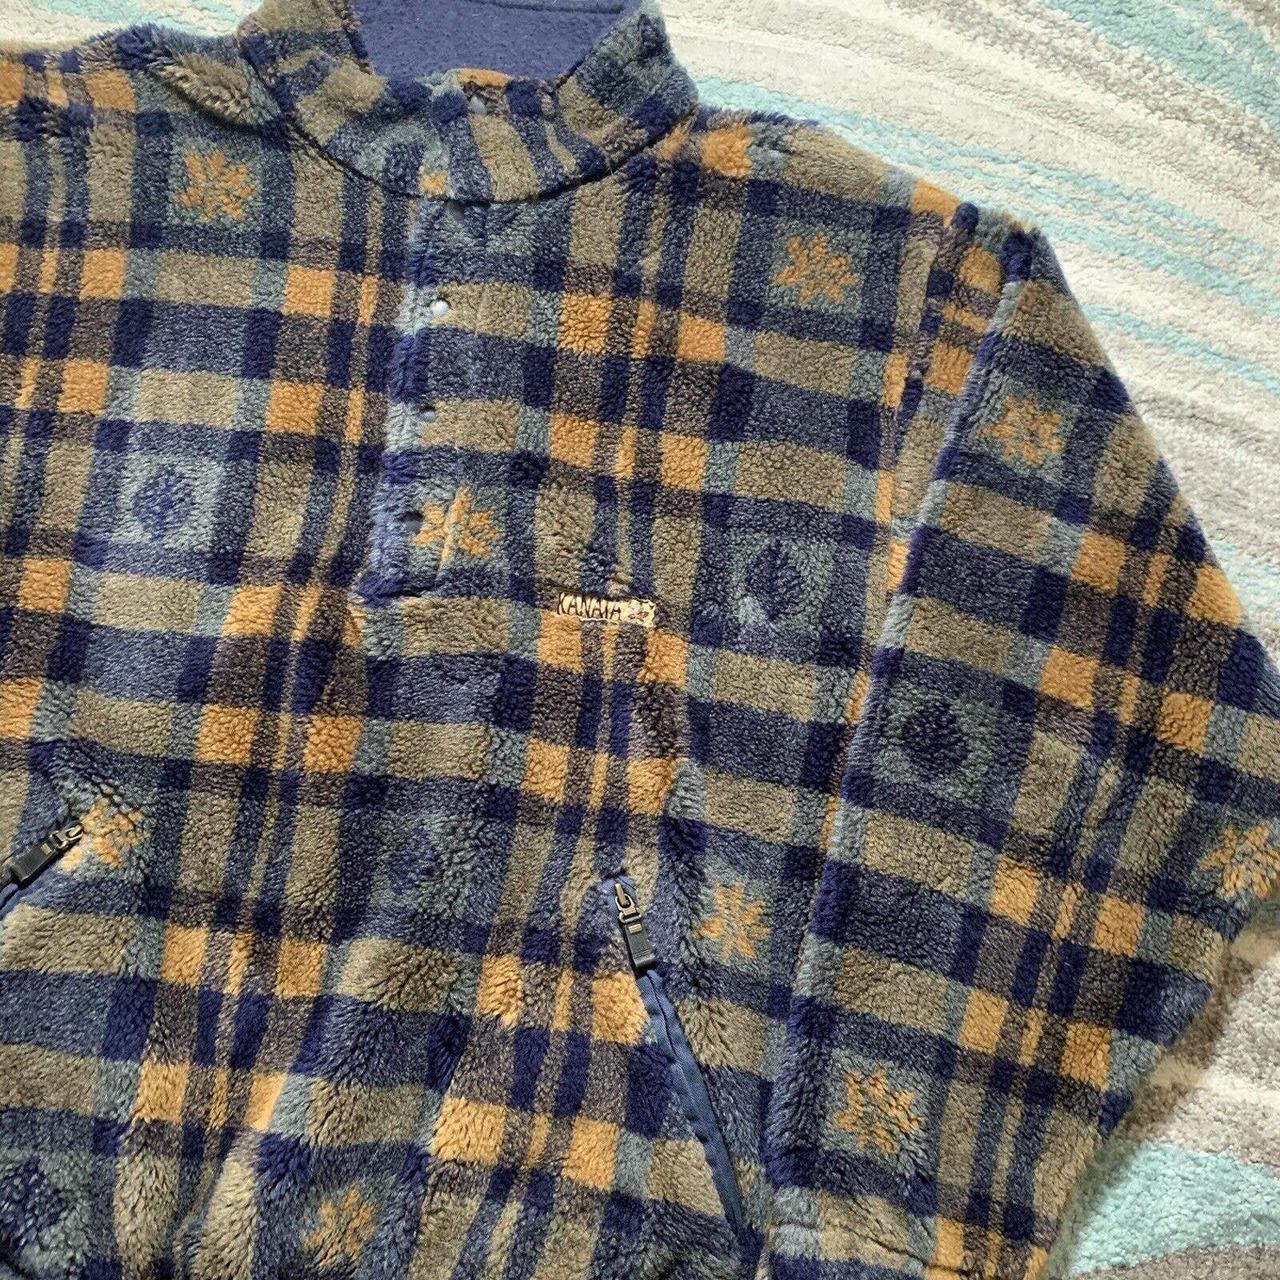 Vintage 90s Kanata Outfitter Wool Blend 1/4 Fleece... - Depop